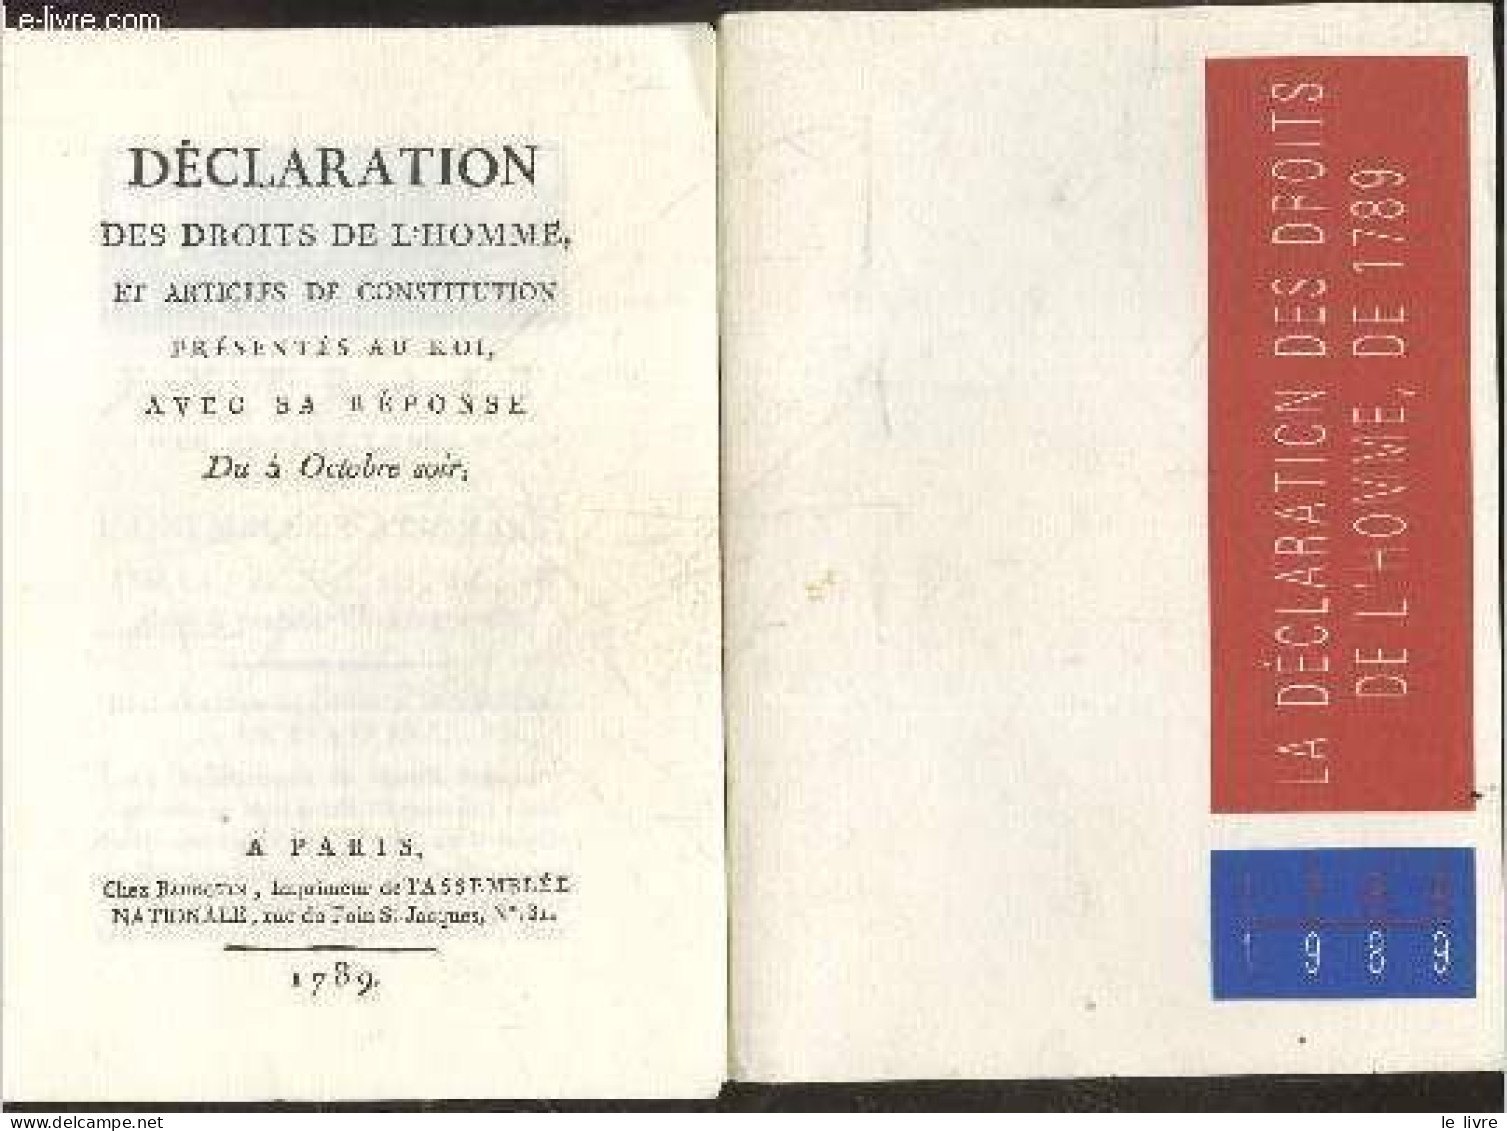 La Declaration Des Droits De L'homme De 1789 - 1789/1989 - COLLECTIF - 1989 - Politica